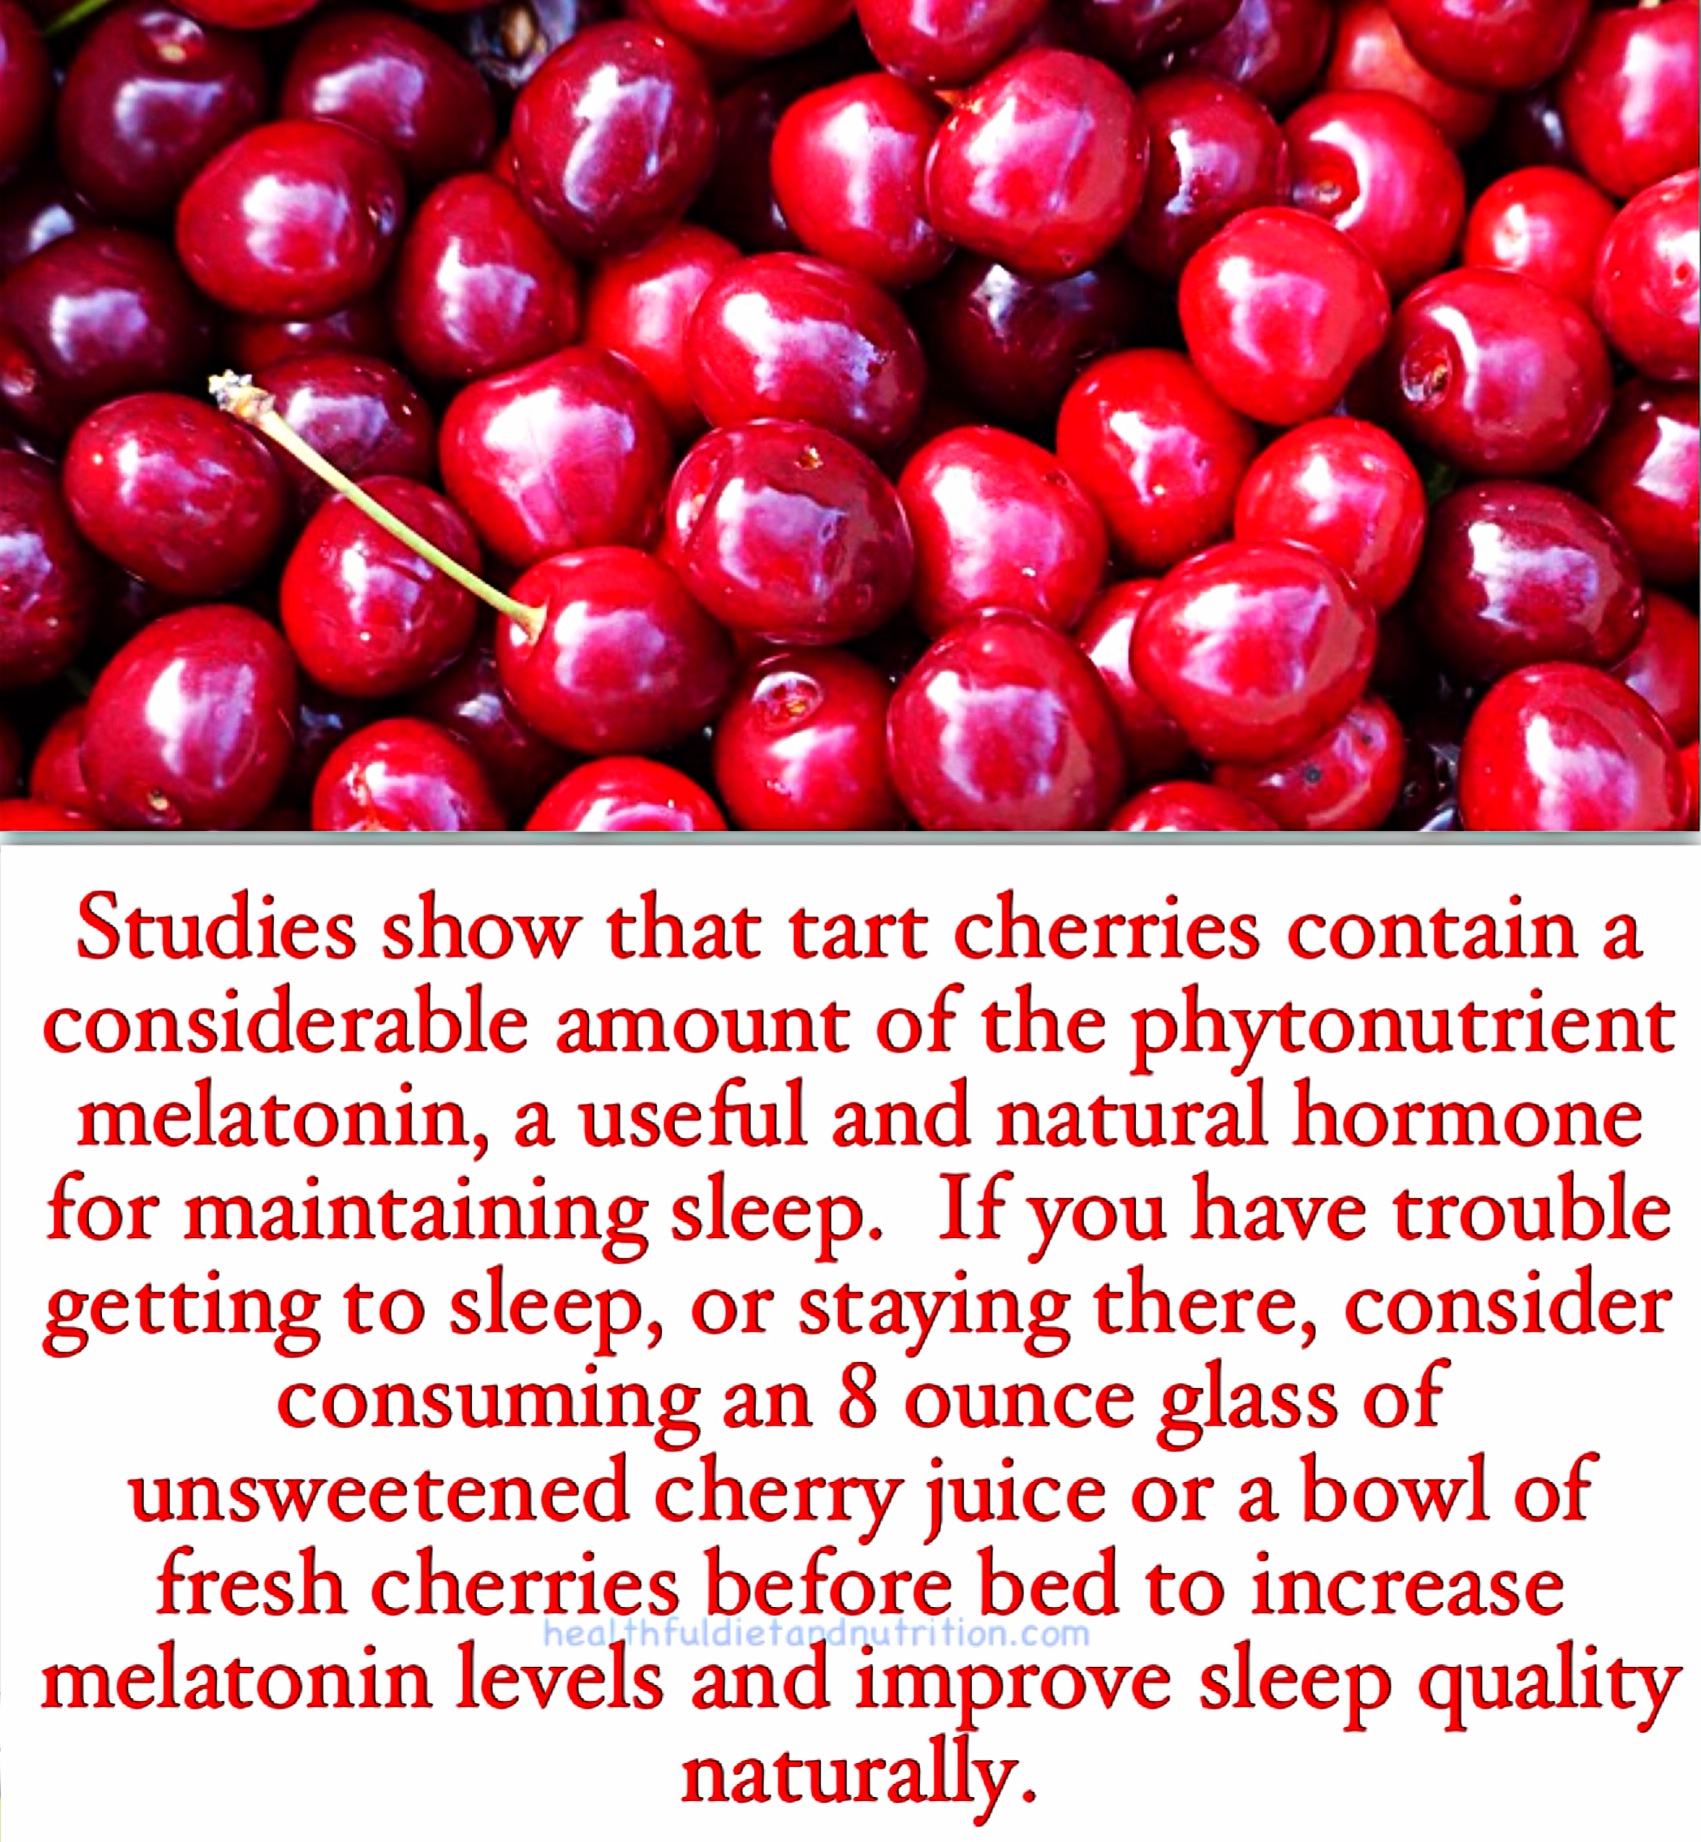 Consume Cherries To Improve Sleep Quality